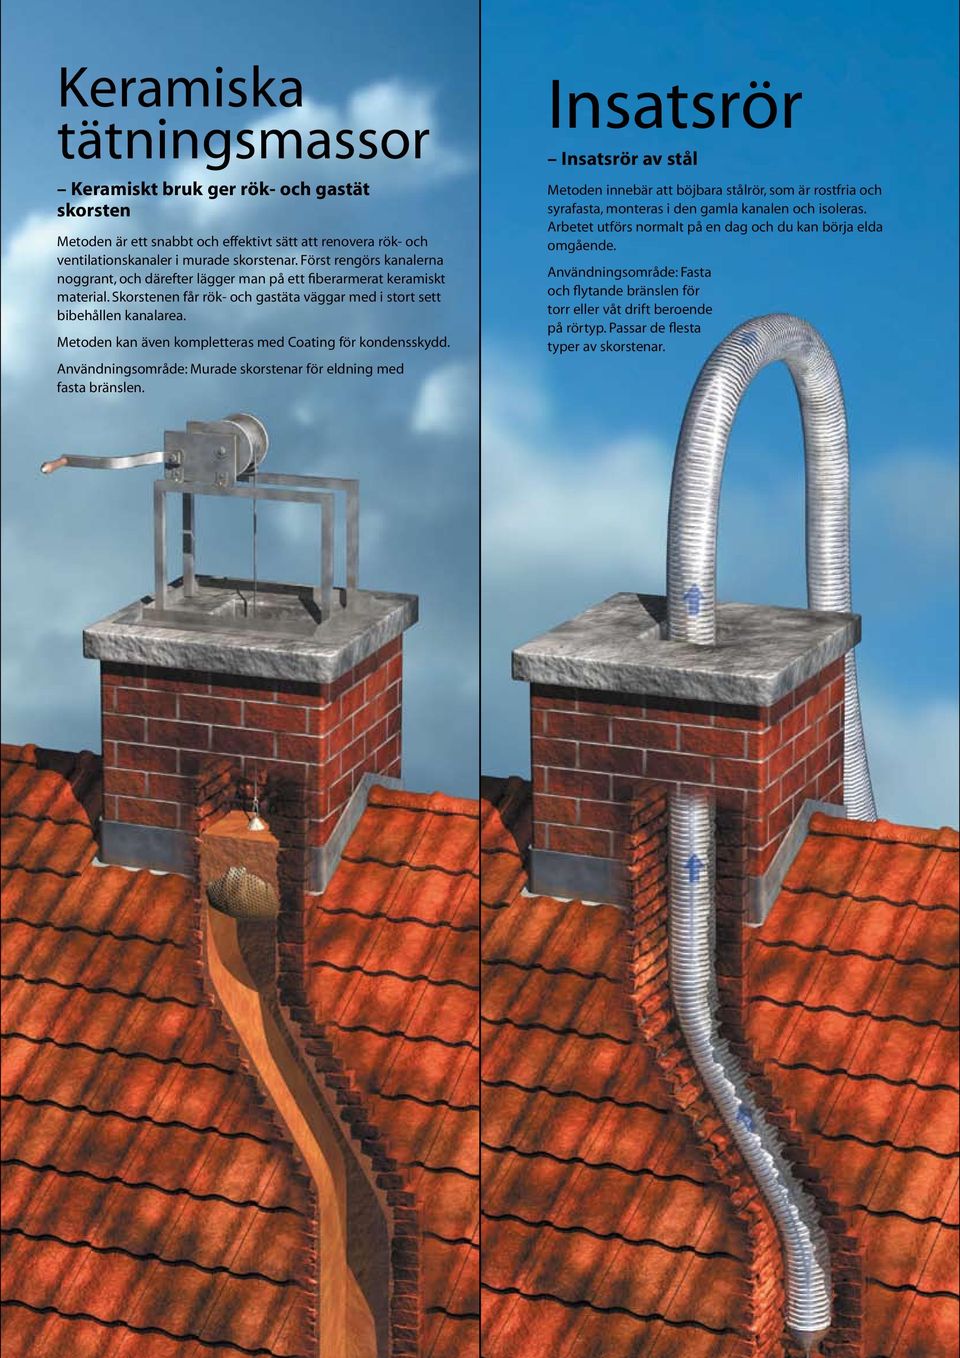 Metoden kan även kompletteras med Coating för kondensskydd. Användningsområde: Murade skorstenar för eldning med fasta bränslen.